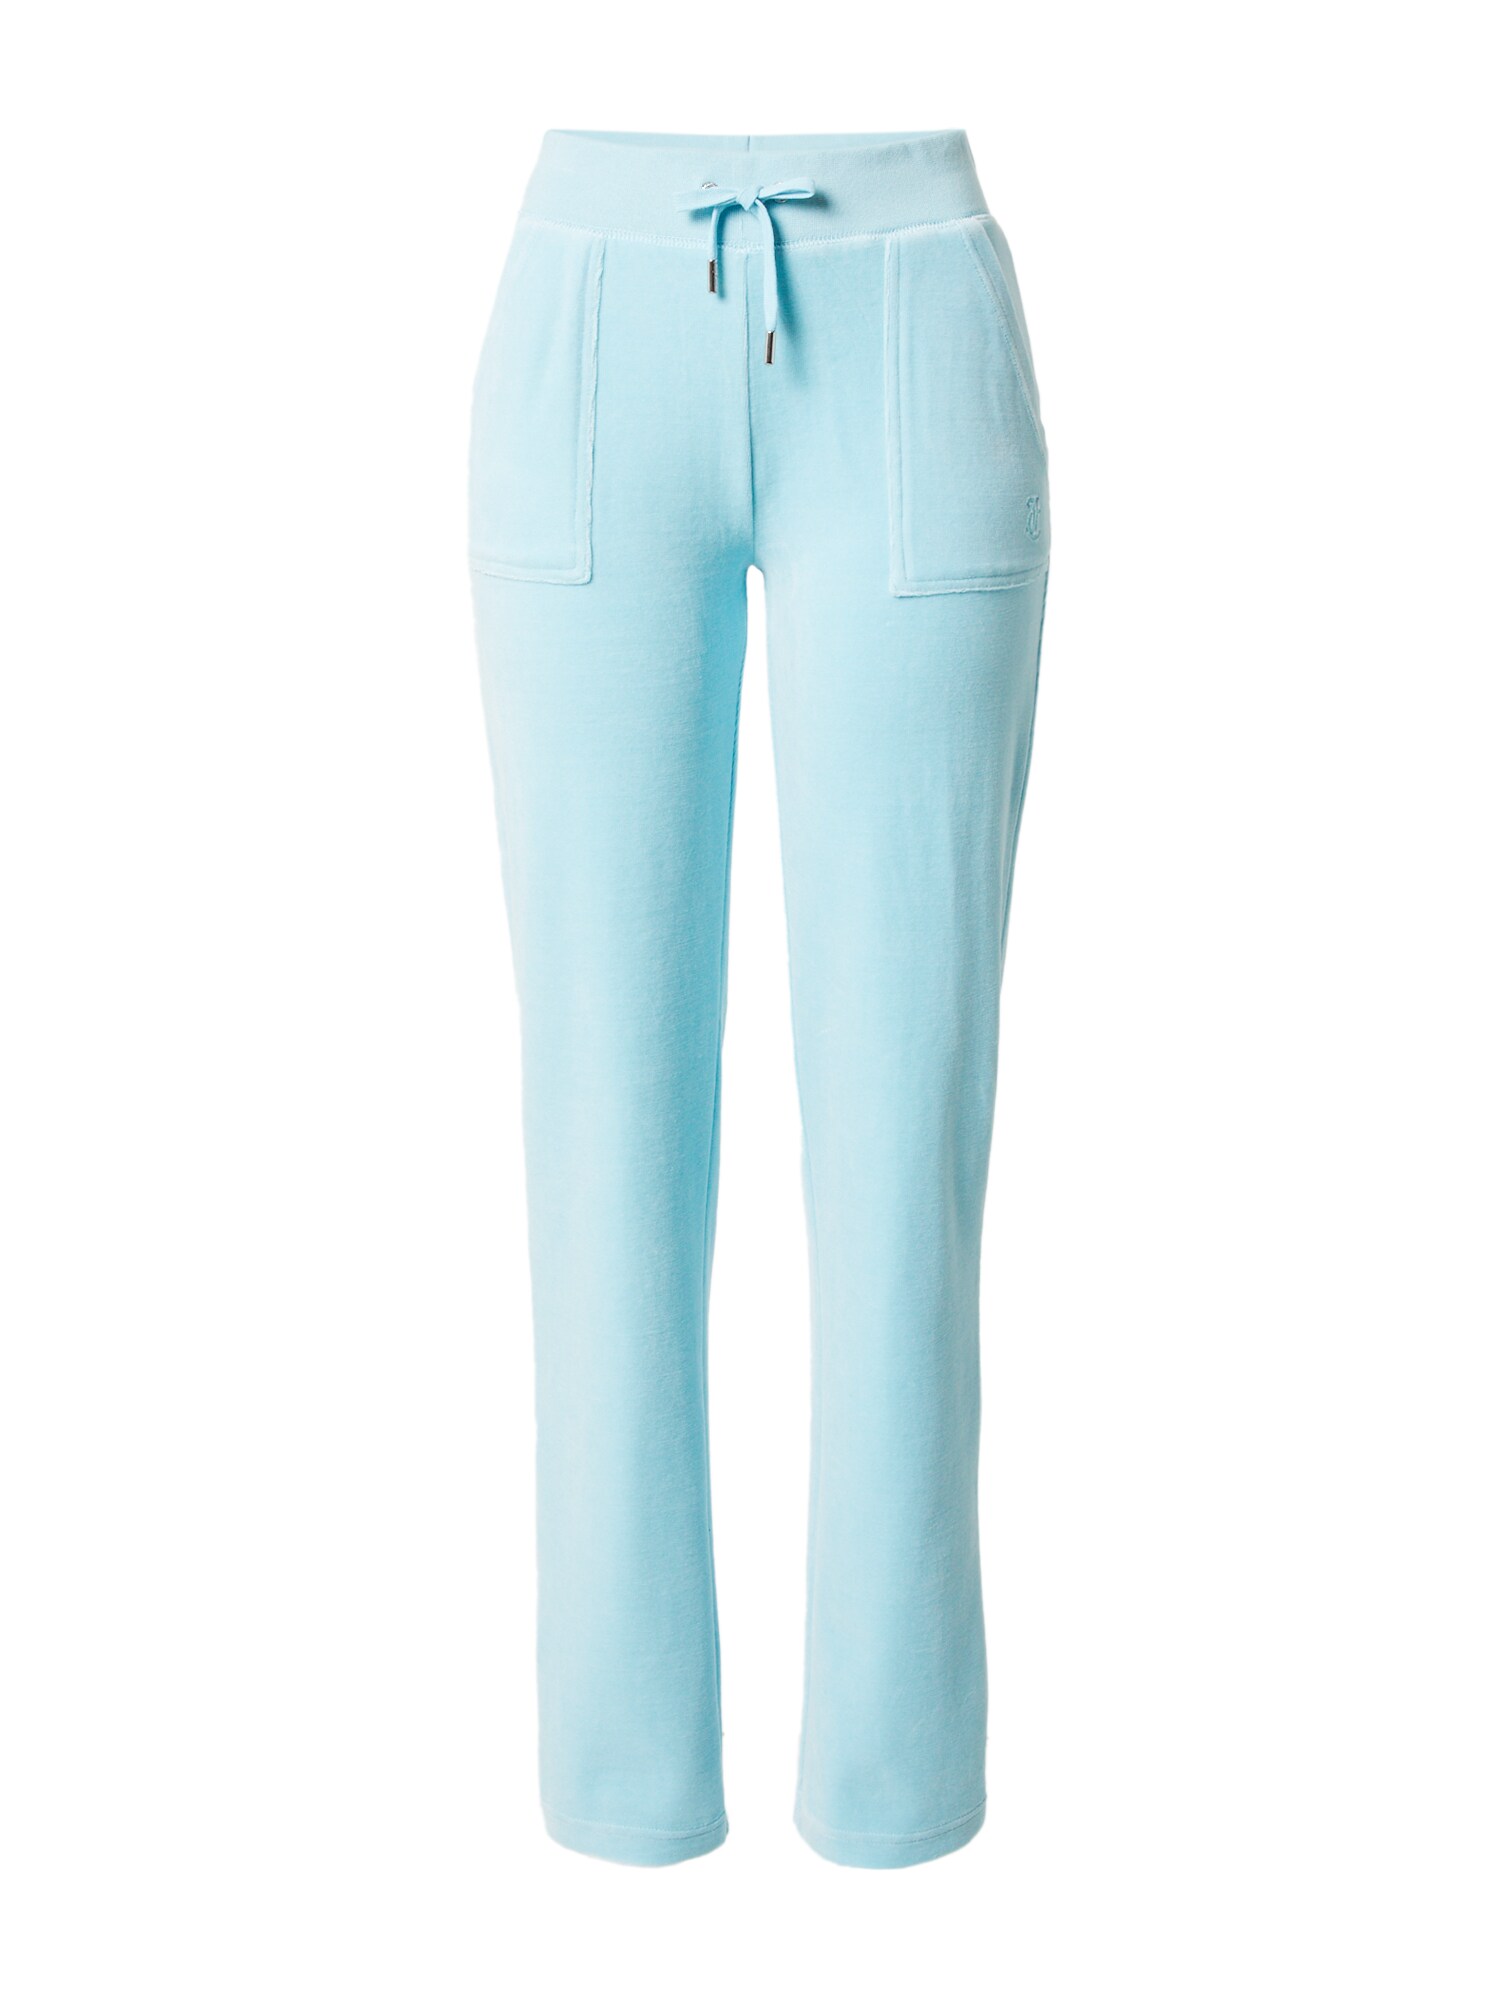 Juicy Couture Black Label Pantaloni  blu chiaro